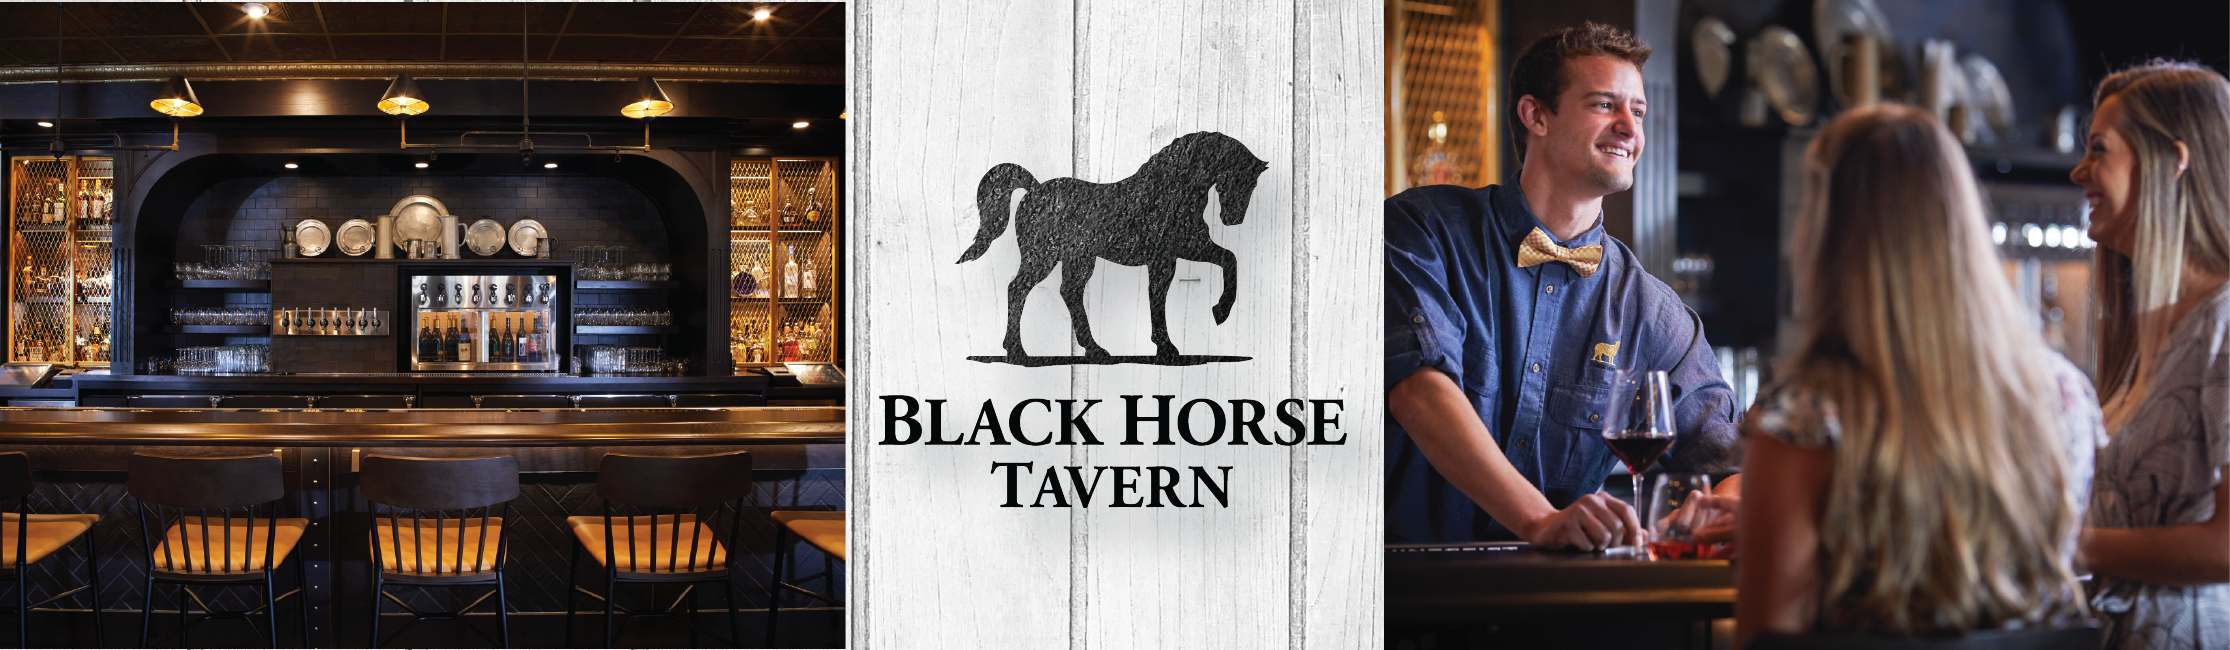 image of bar at Black Horse Tavern